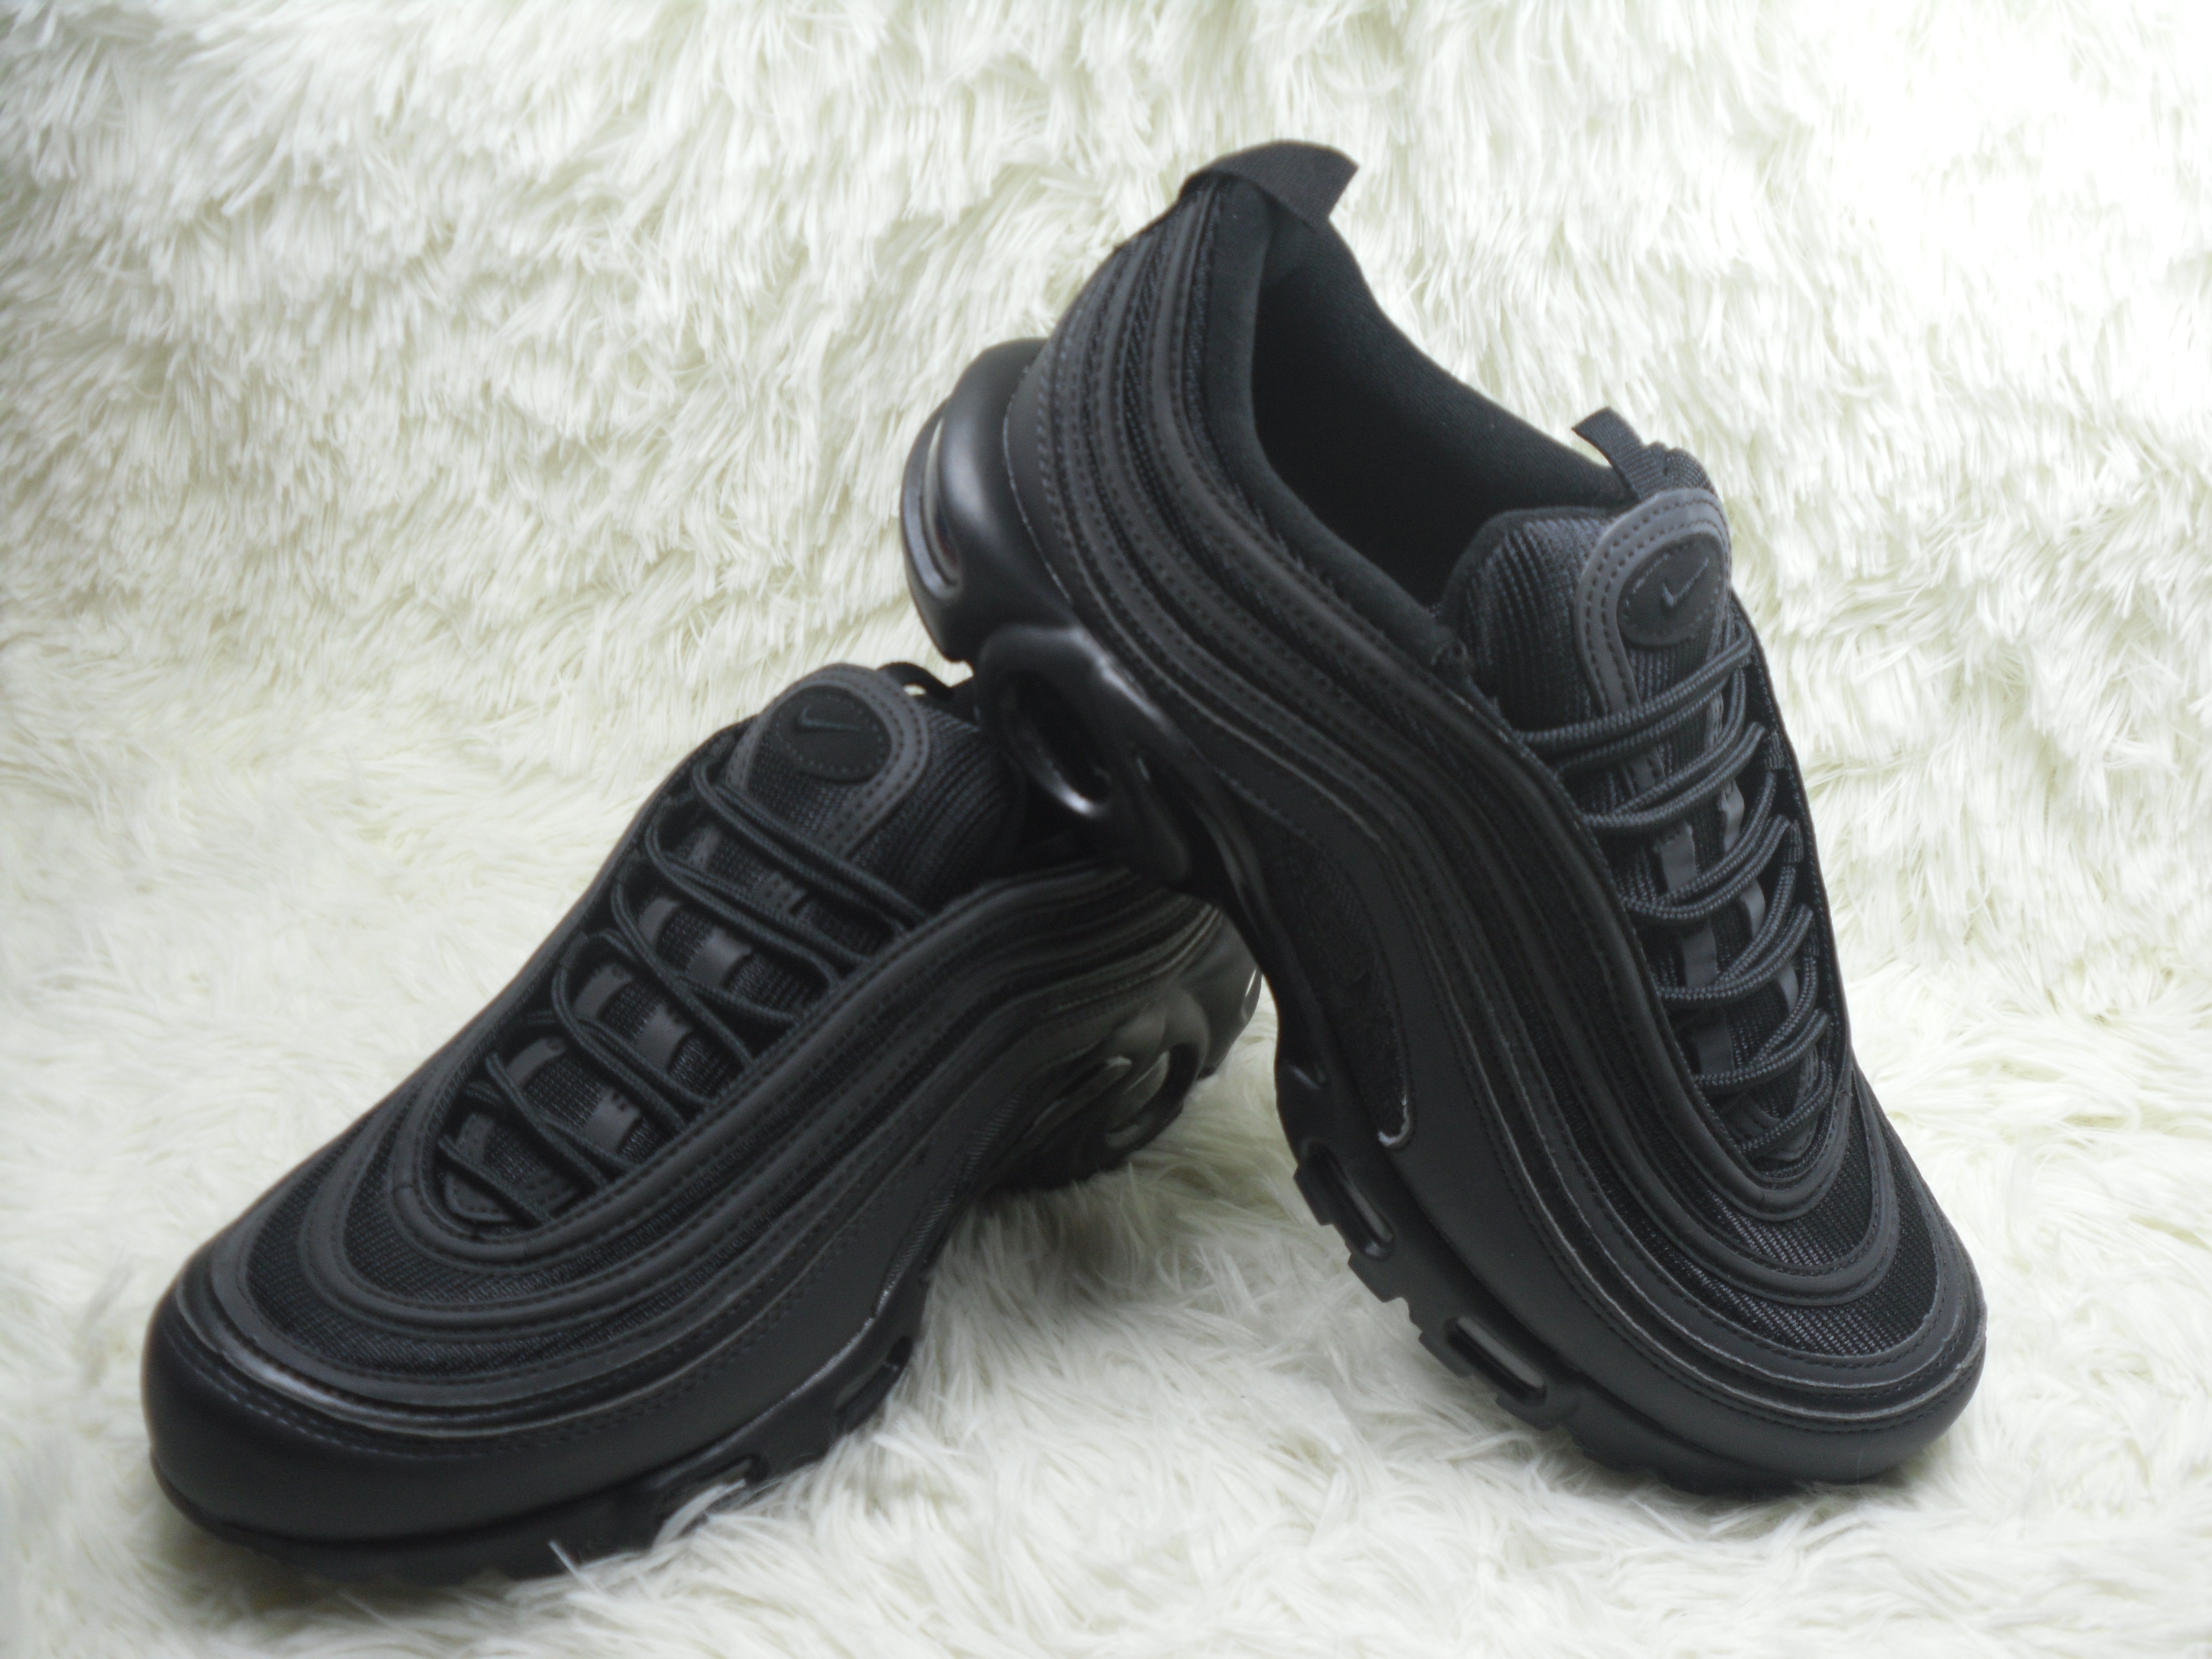 Nike Air Max TN 97 All Black Shoes